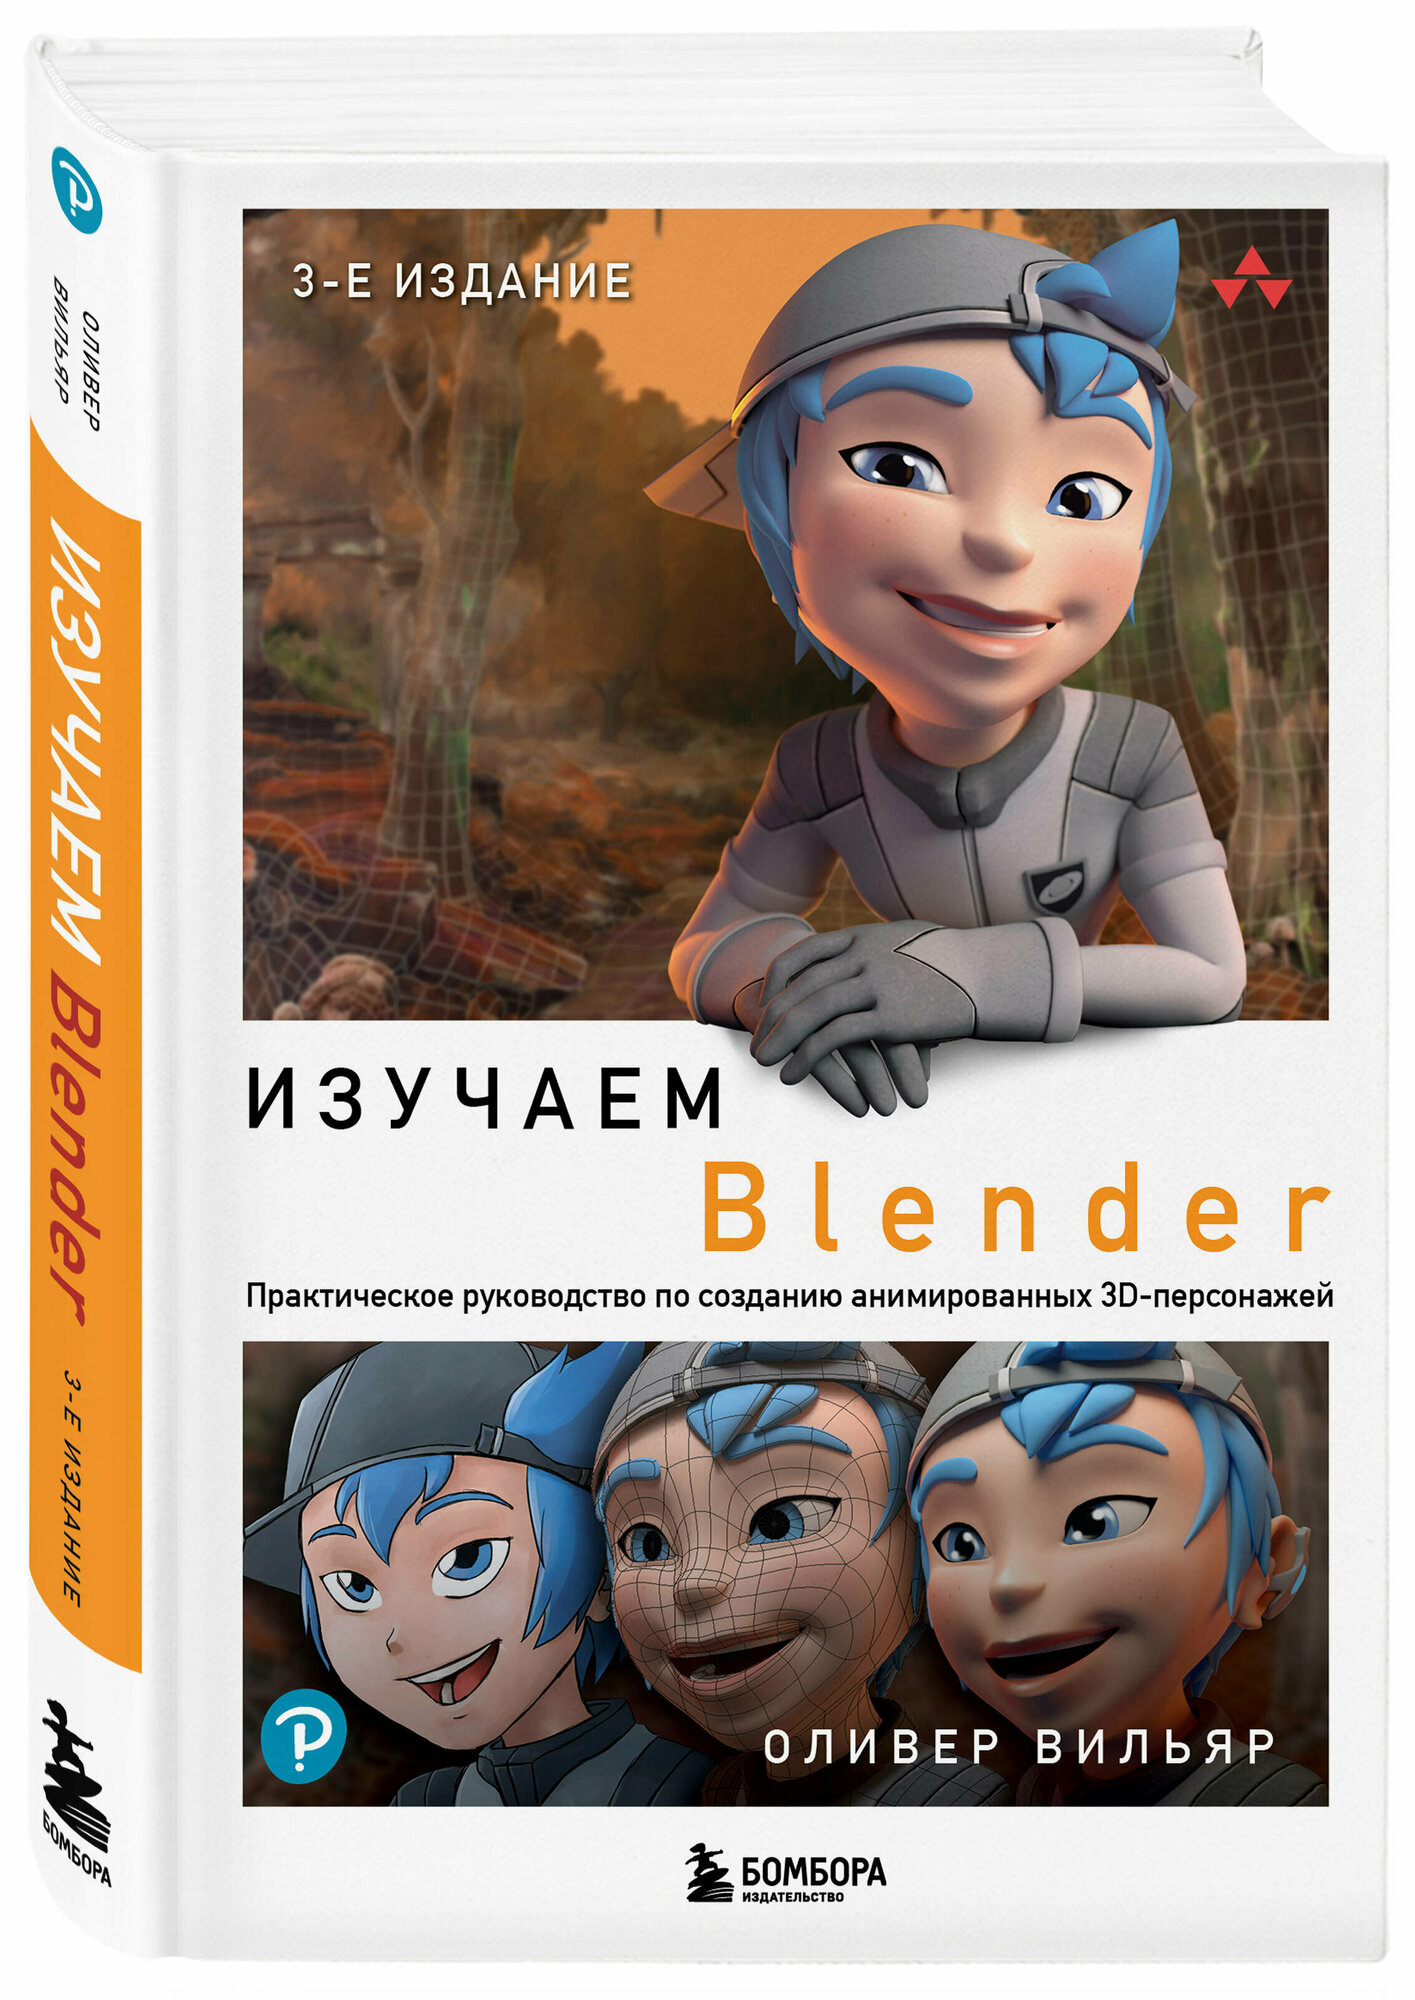 Изучаем Blender: Практическое руководство по созданию анимированных 3D-персонажей - фото №1